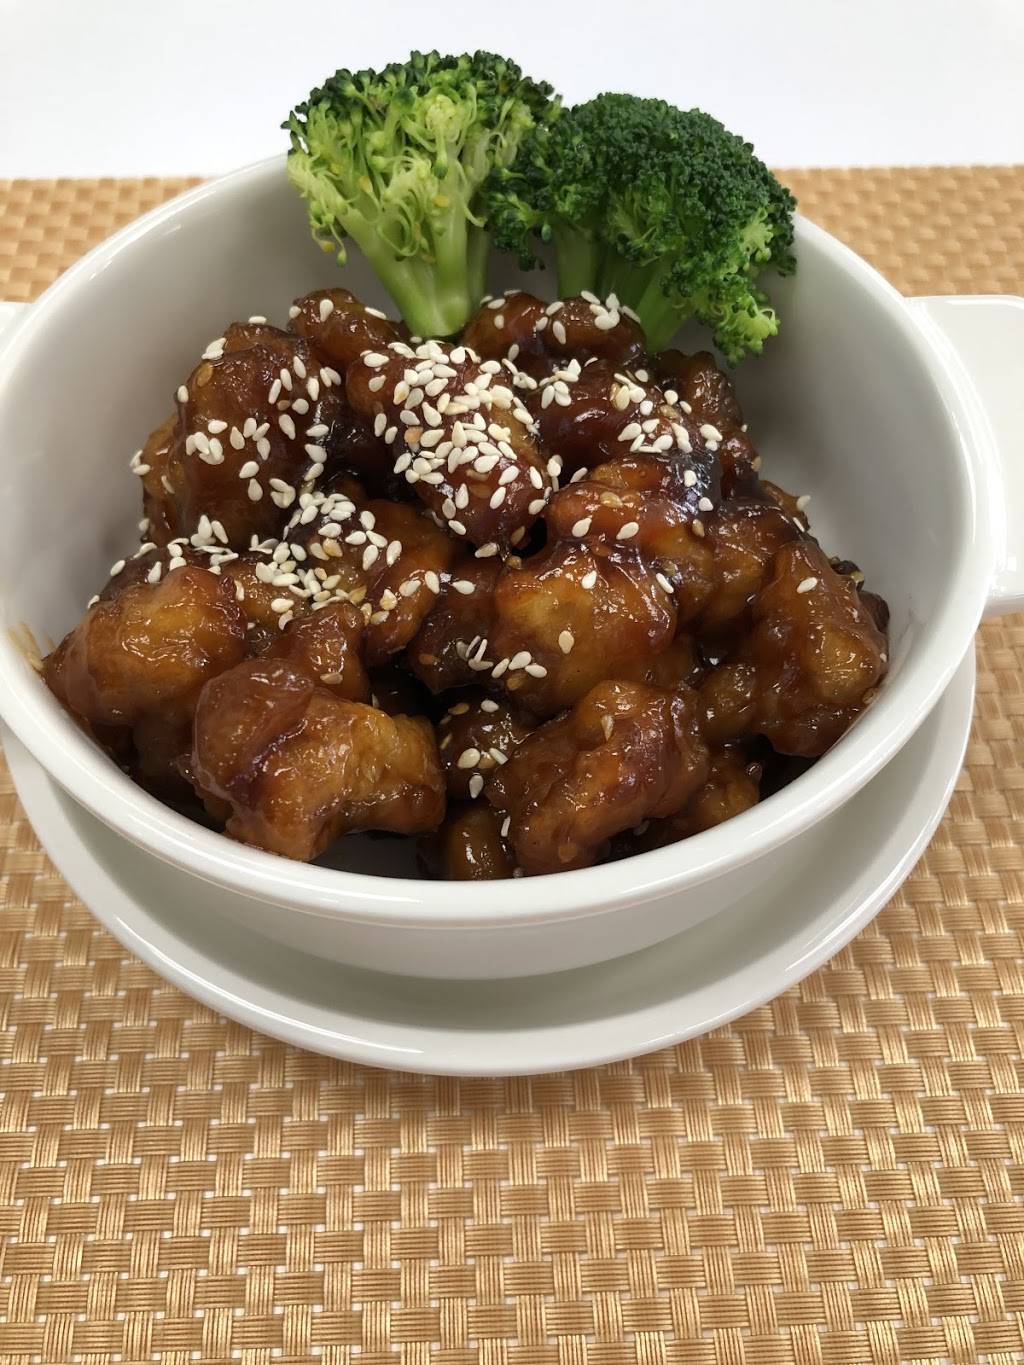 Wasabi Asian Cuisine | 2460 Lacy Ln #110, Carrollton, TX 75006, USA | Phone: (972) 247-2922